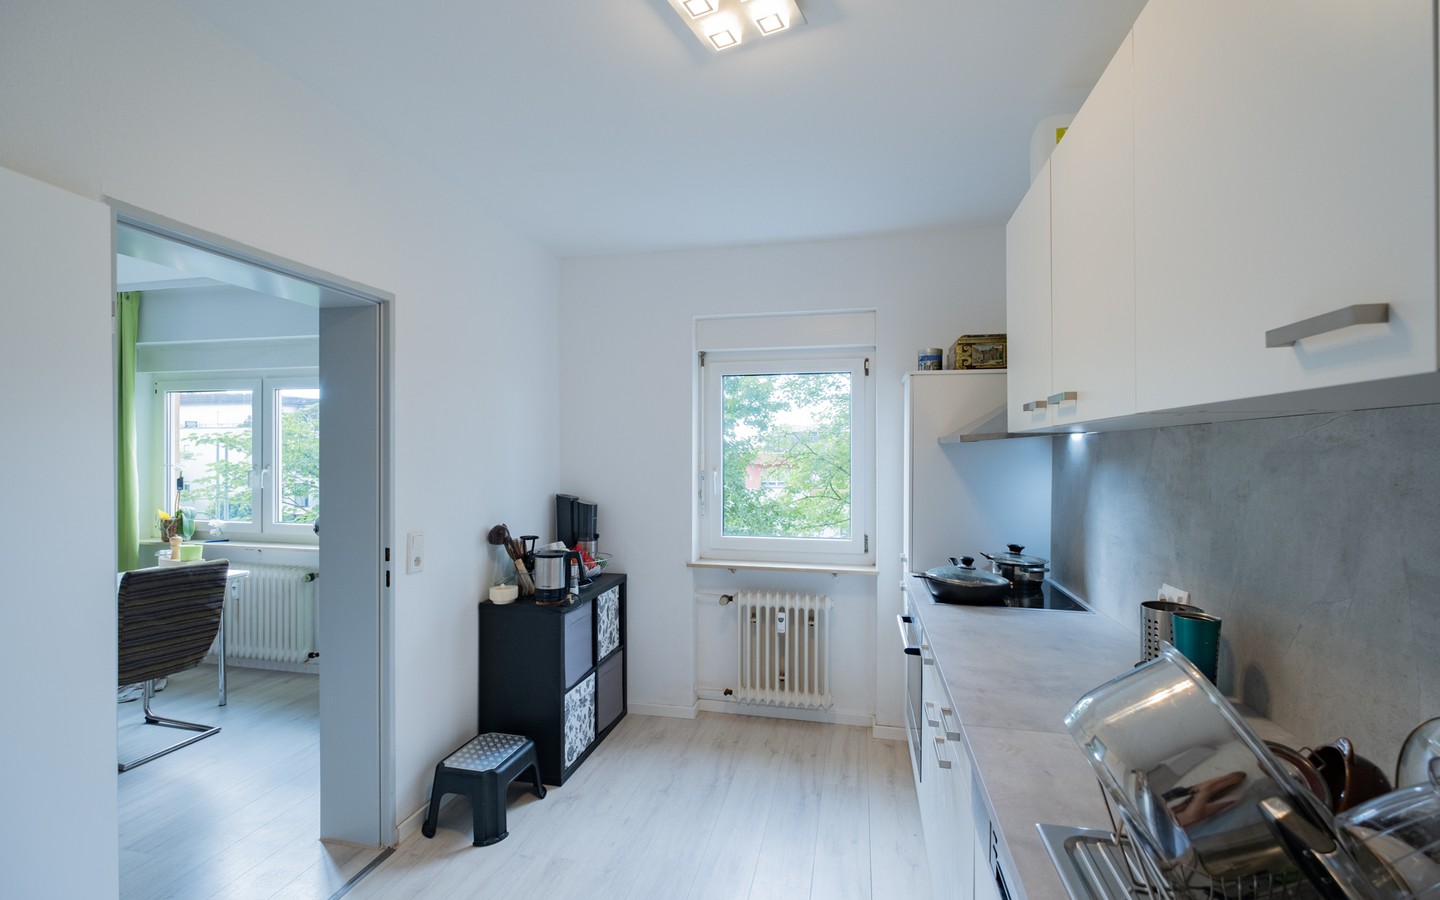 Küche - Leimen-St.Ilgen: helle 3-Zimmer-Wohnung mit Loggia, Keller und überdachtem PKW-Stellplatz